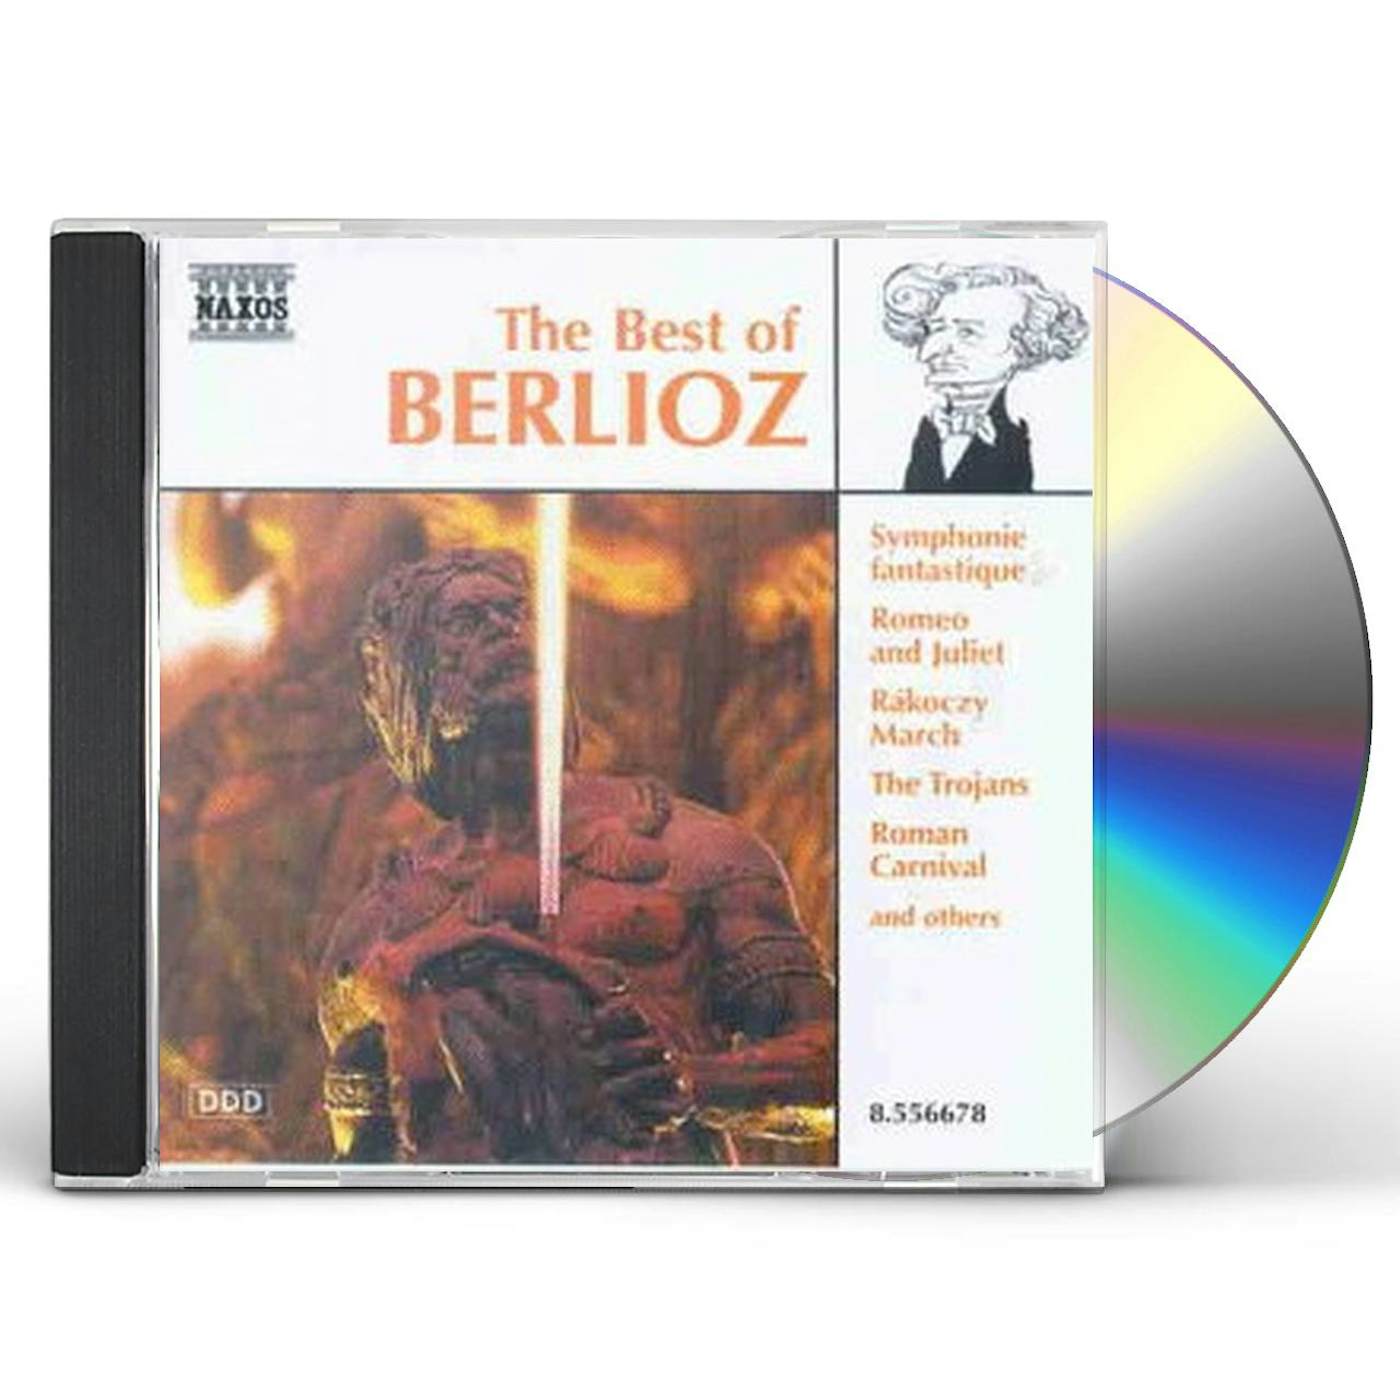 Berlioz BEST OF CD